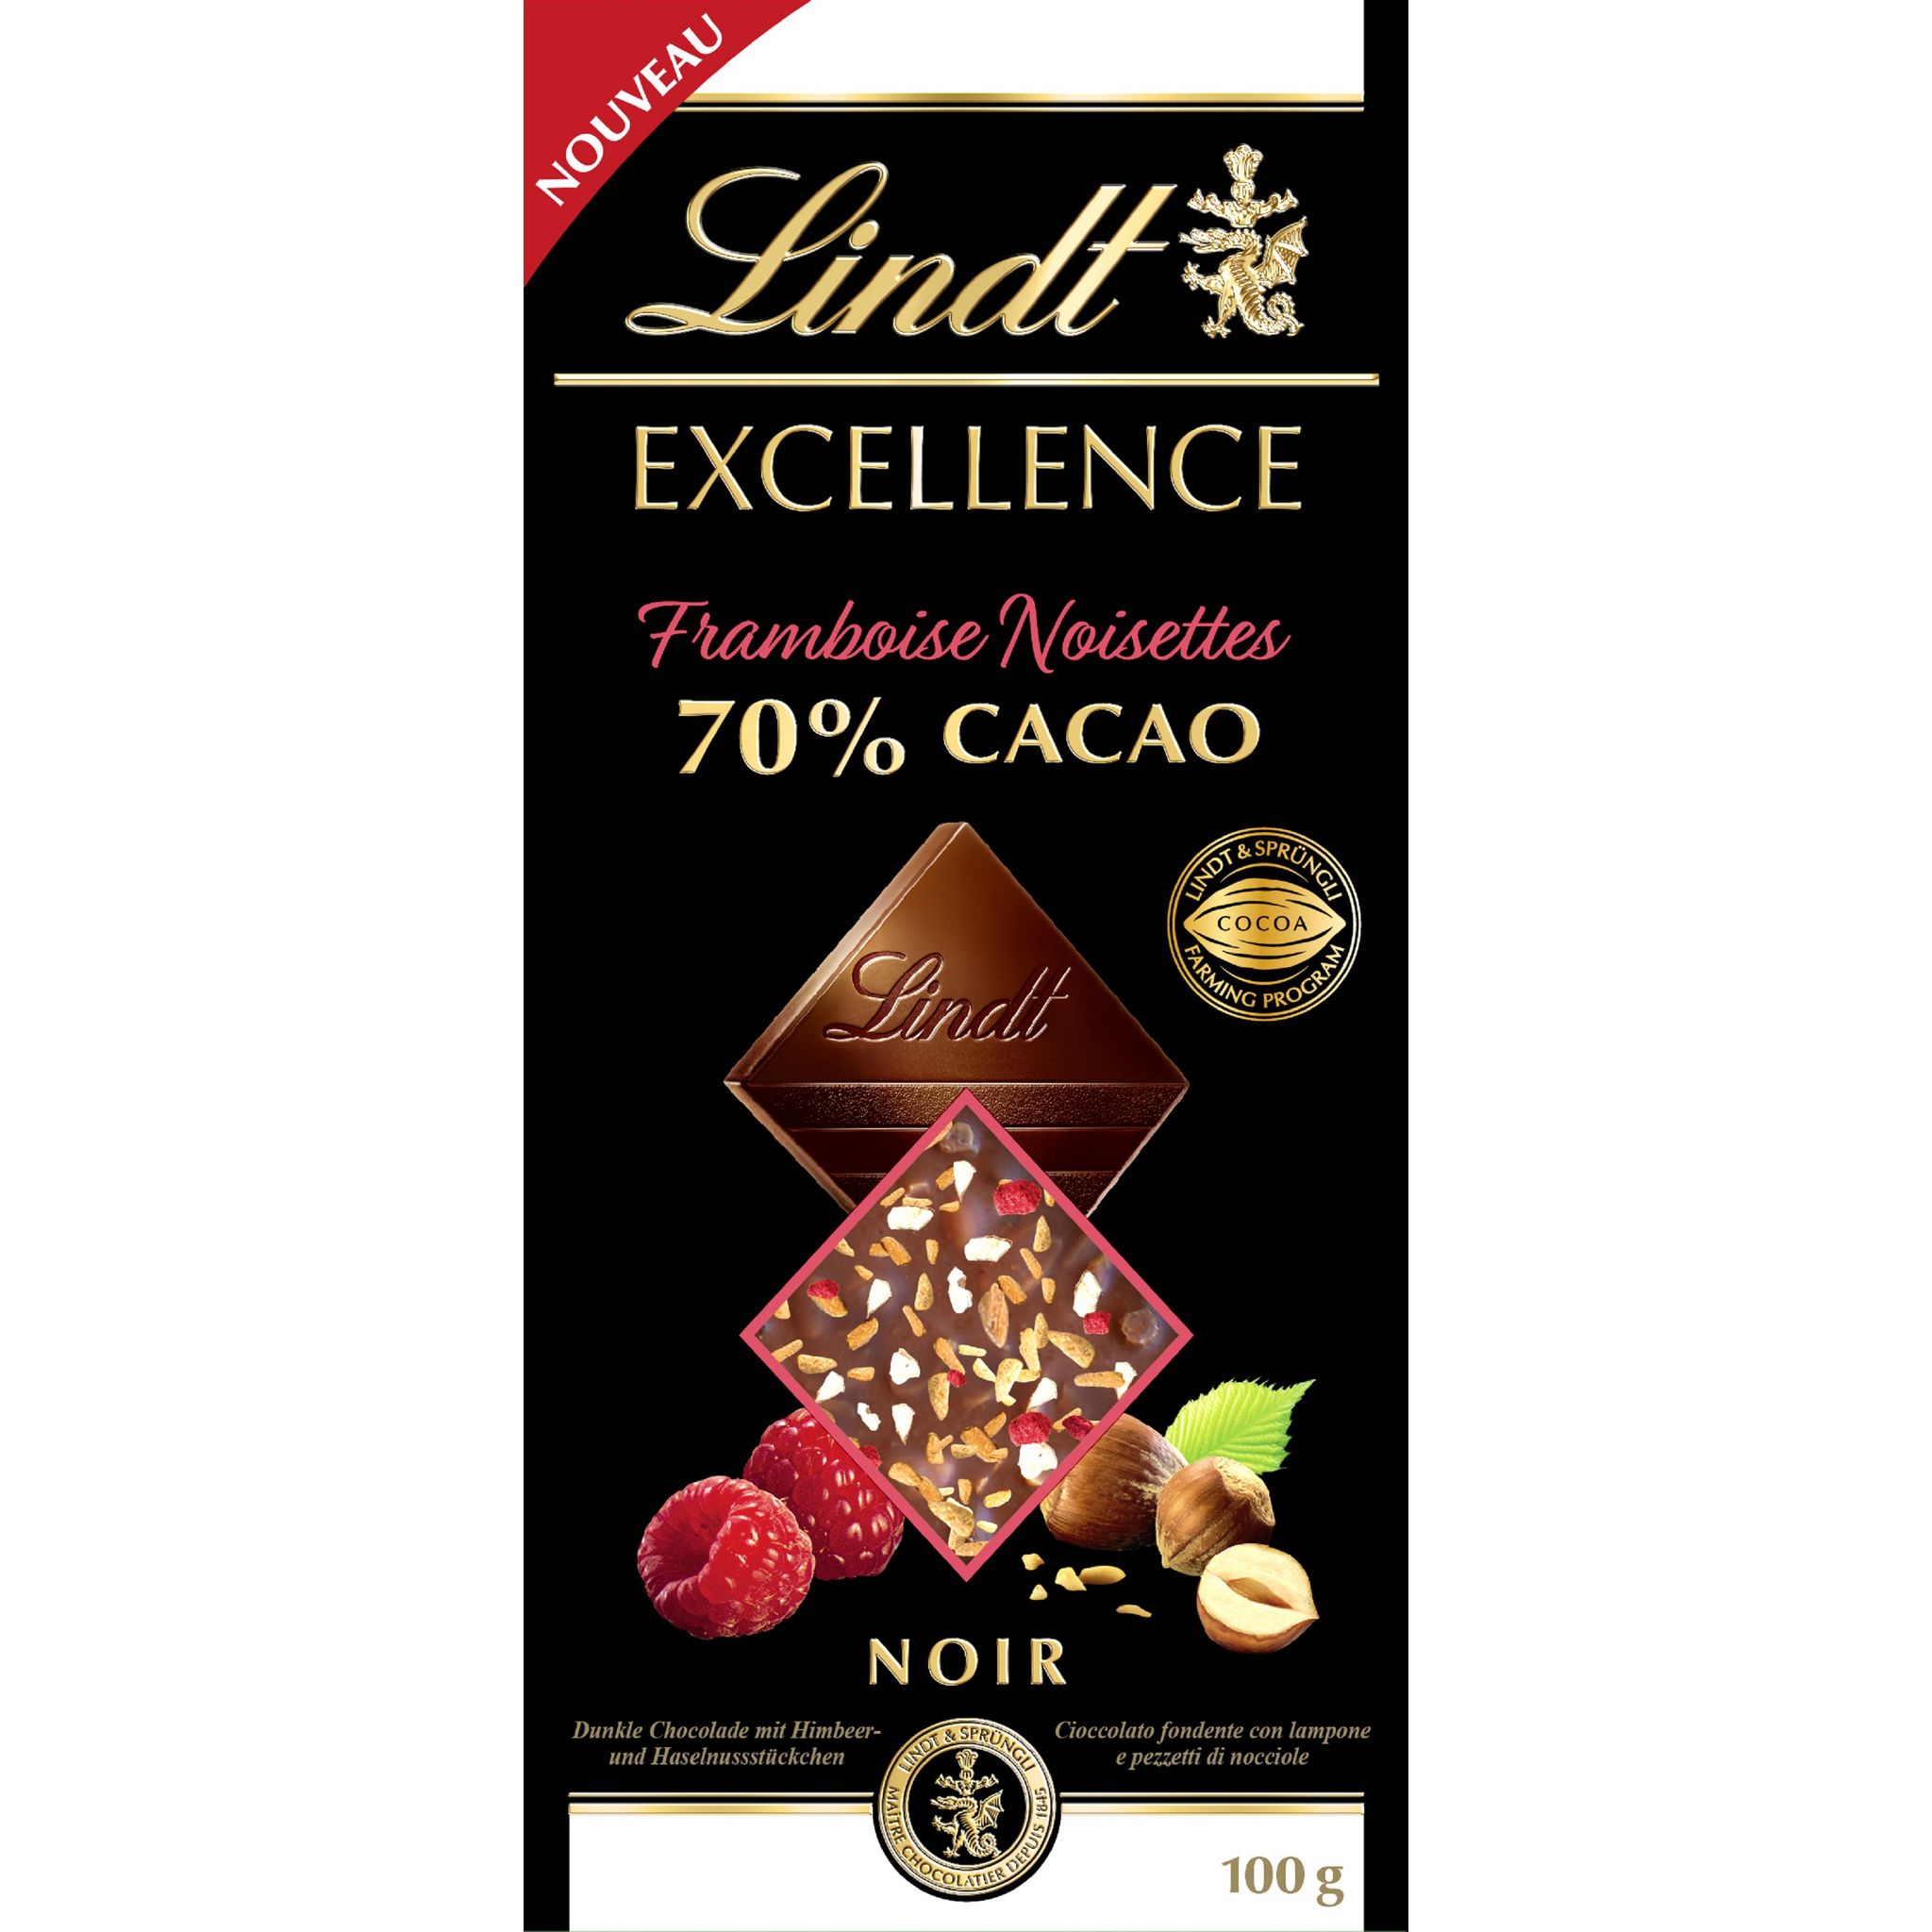 Tablette EXCELLENCE Doux 70% Cacao Noir 100g